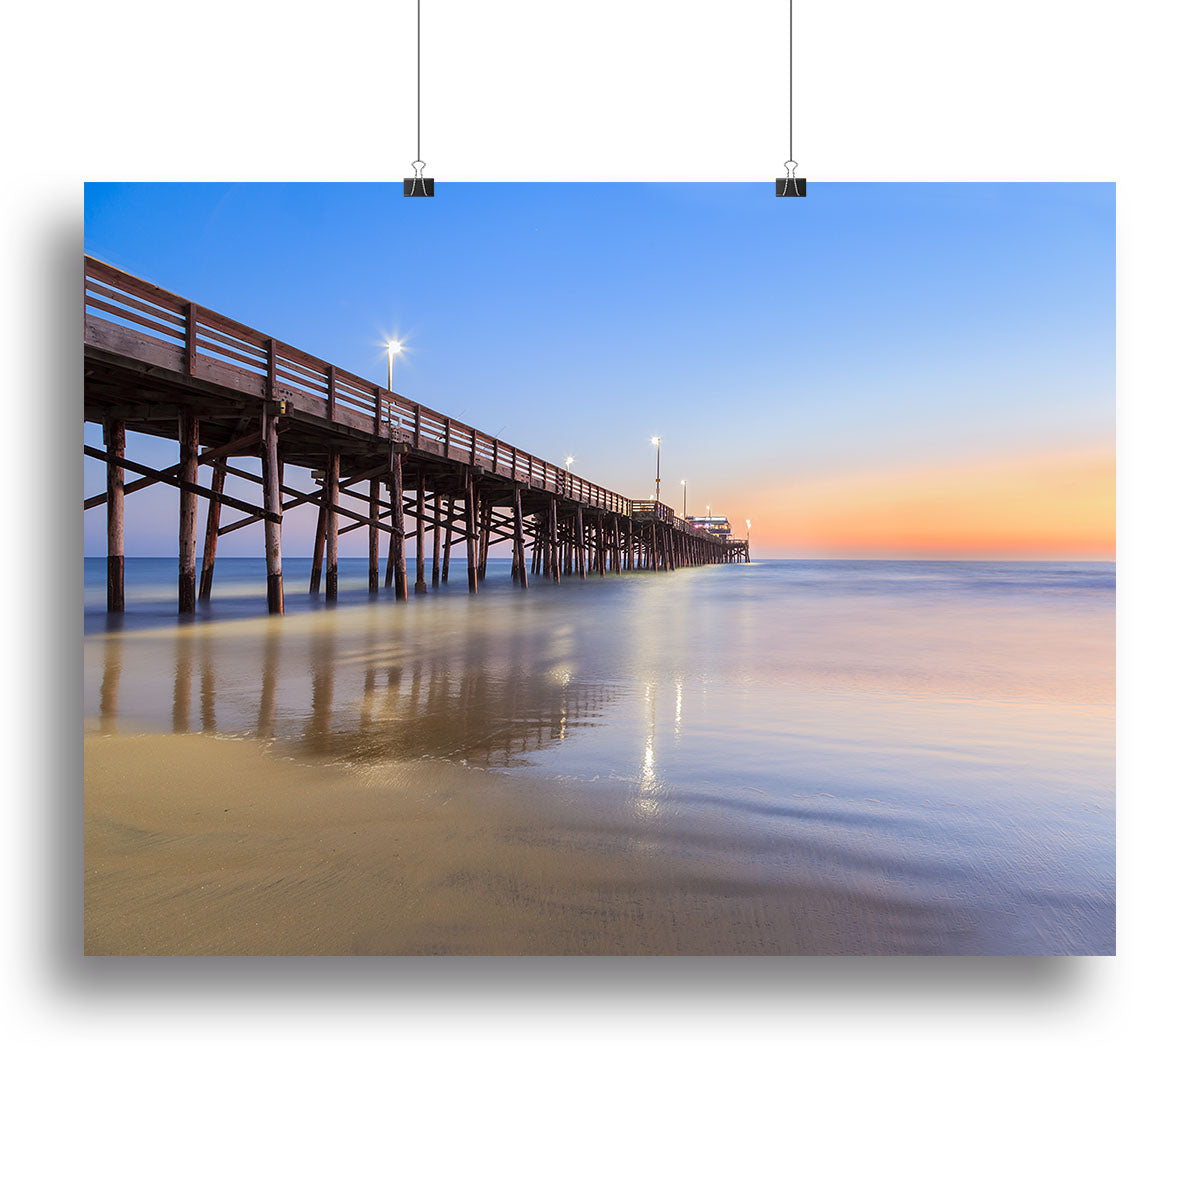 Newport Beach pier after sunset Canvas Print or Poster - Canvas Art Rocks - 2